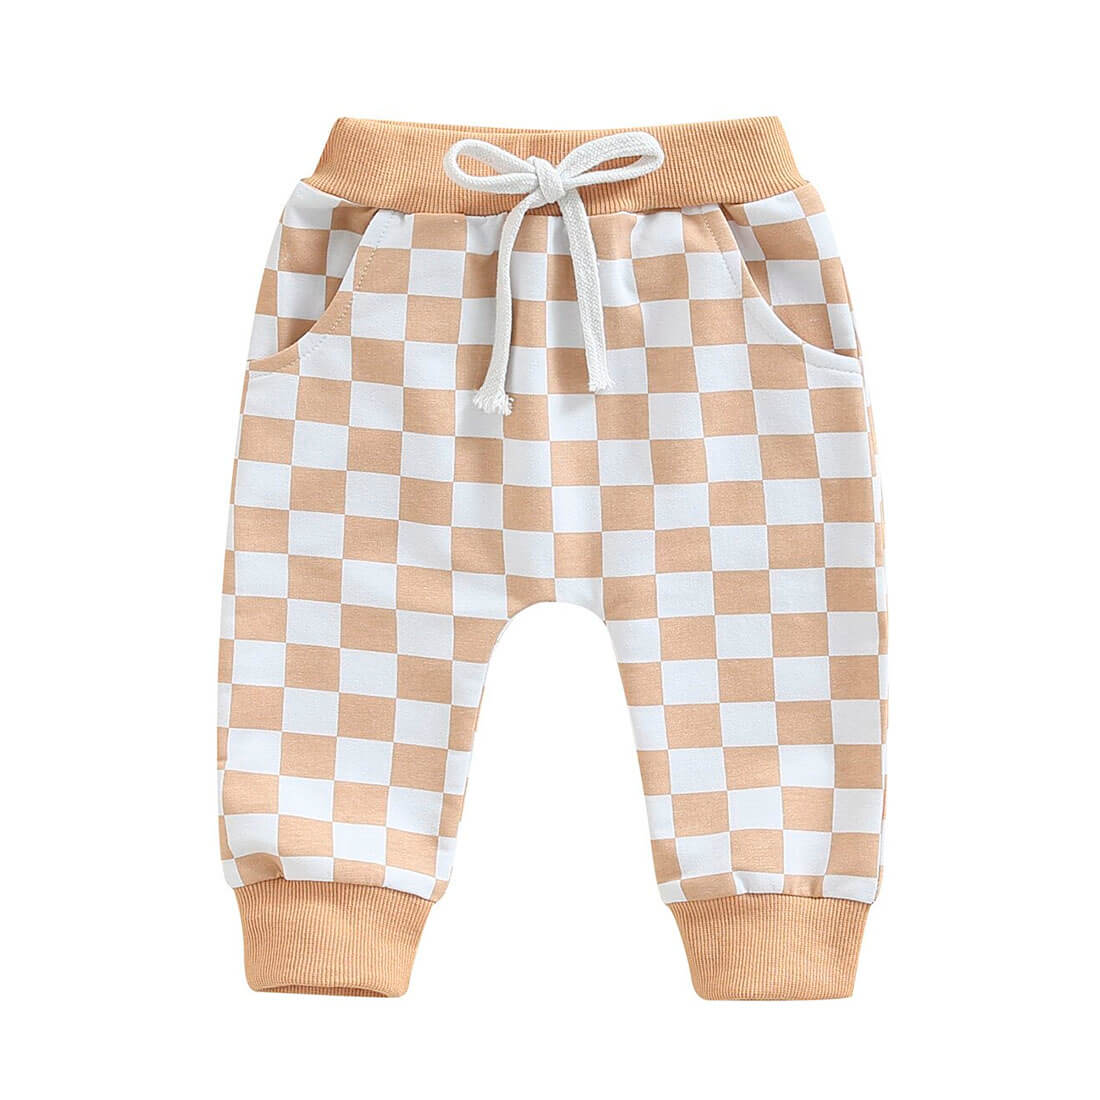 Tan Checkered Baby Pants   